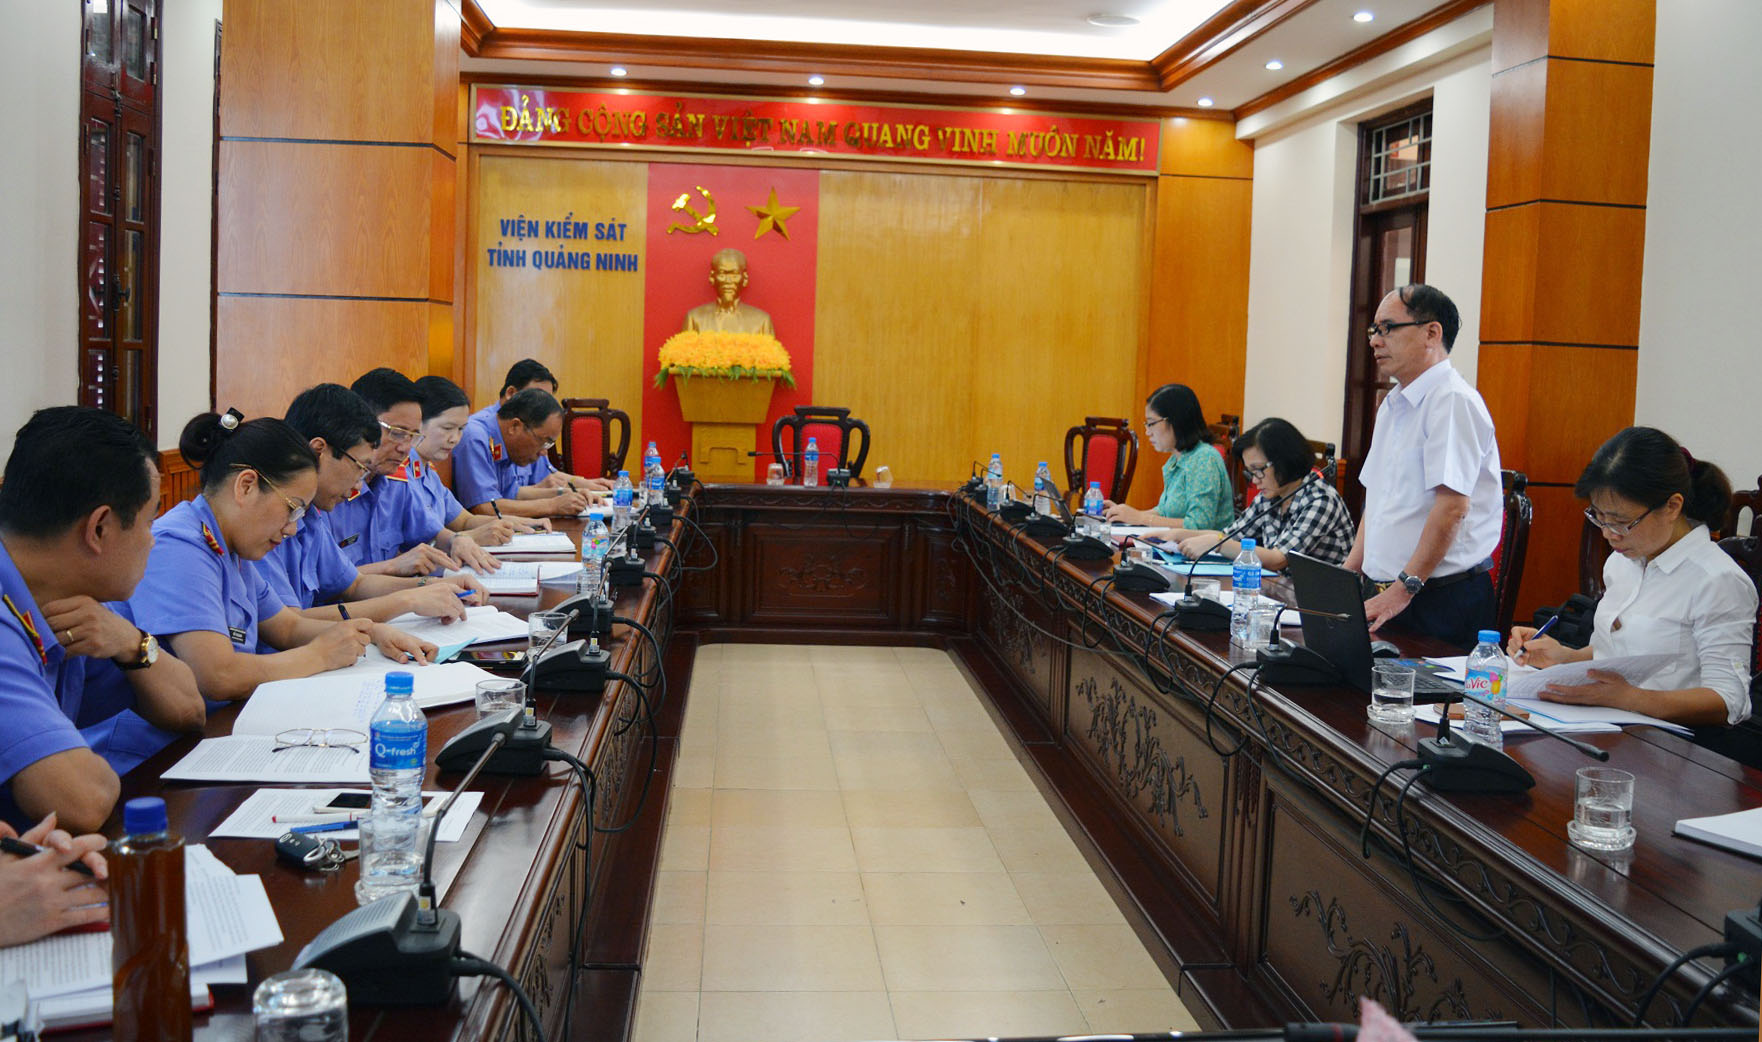 Đoàn kiểm tra của Tỉnh ủy kiểm tra công tác lãnh đạo, chỉ đạo và tổ chức thực hiện Nghị quyết số 49-NQ/TW của Bộ Chính trị tại VKSND tỉnh Quảng Ninh